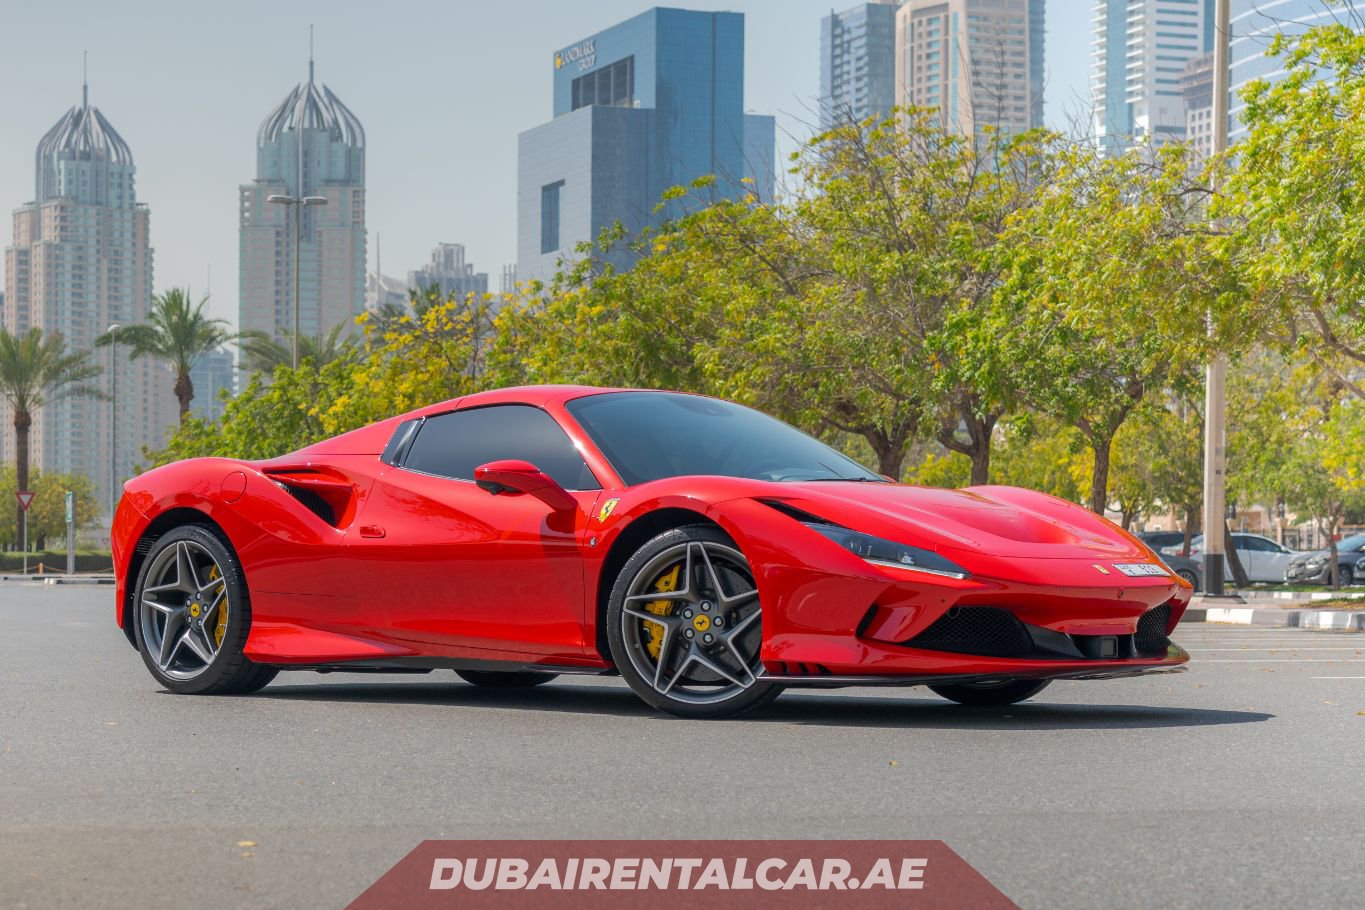 Dubai Rental Car